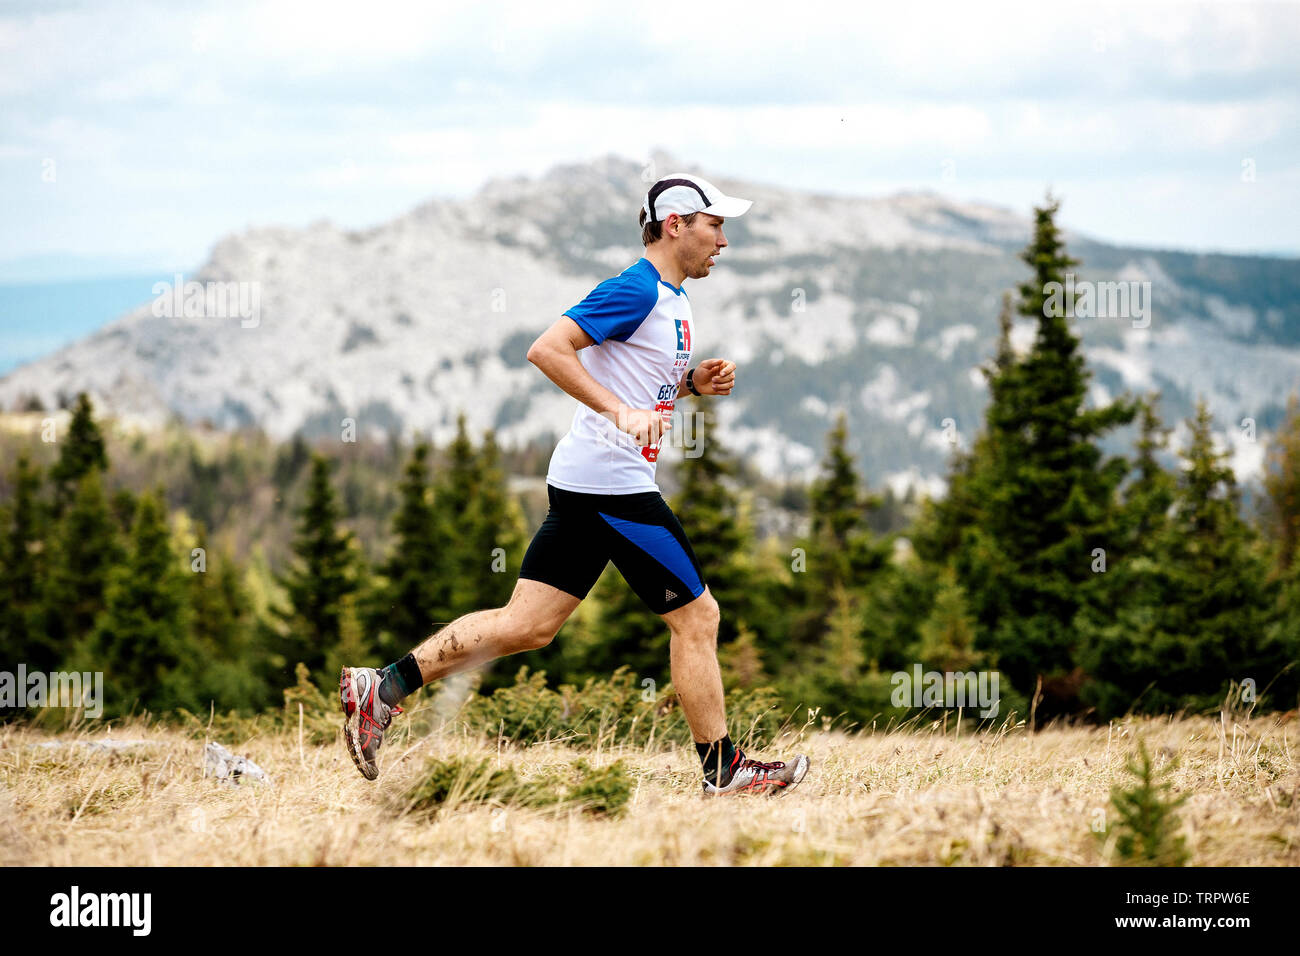 Eldan, Russland - Juni 1, 2019: männlich Runner running Trail auf Hintergrund Wald und Berg im Marathon Gesund wie Elche Stockfoto